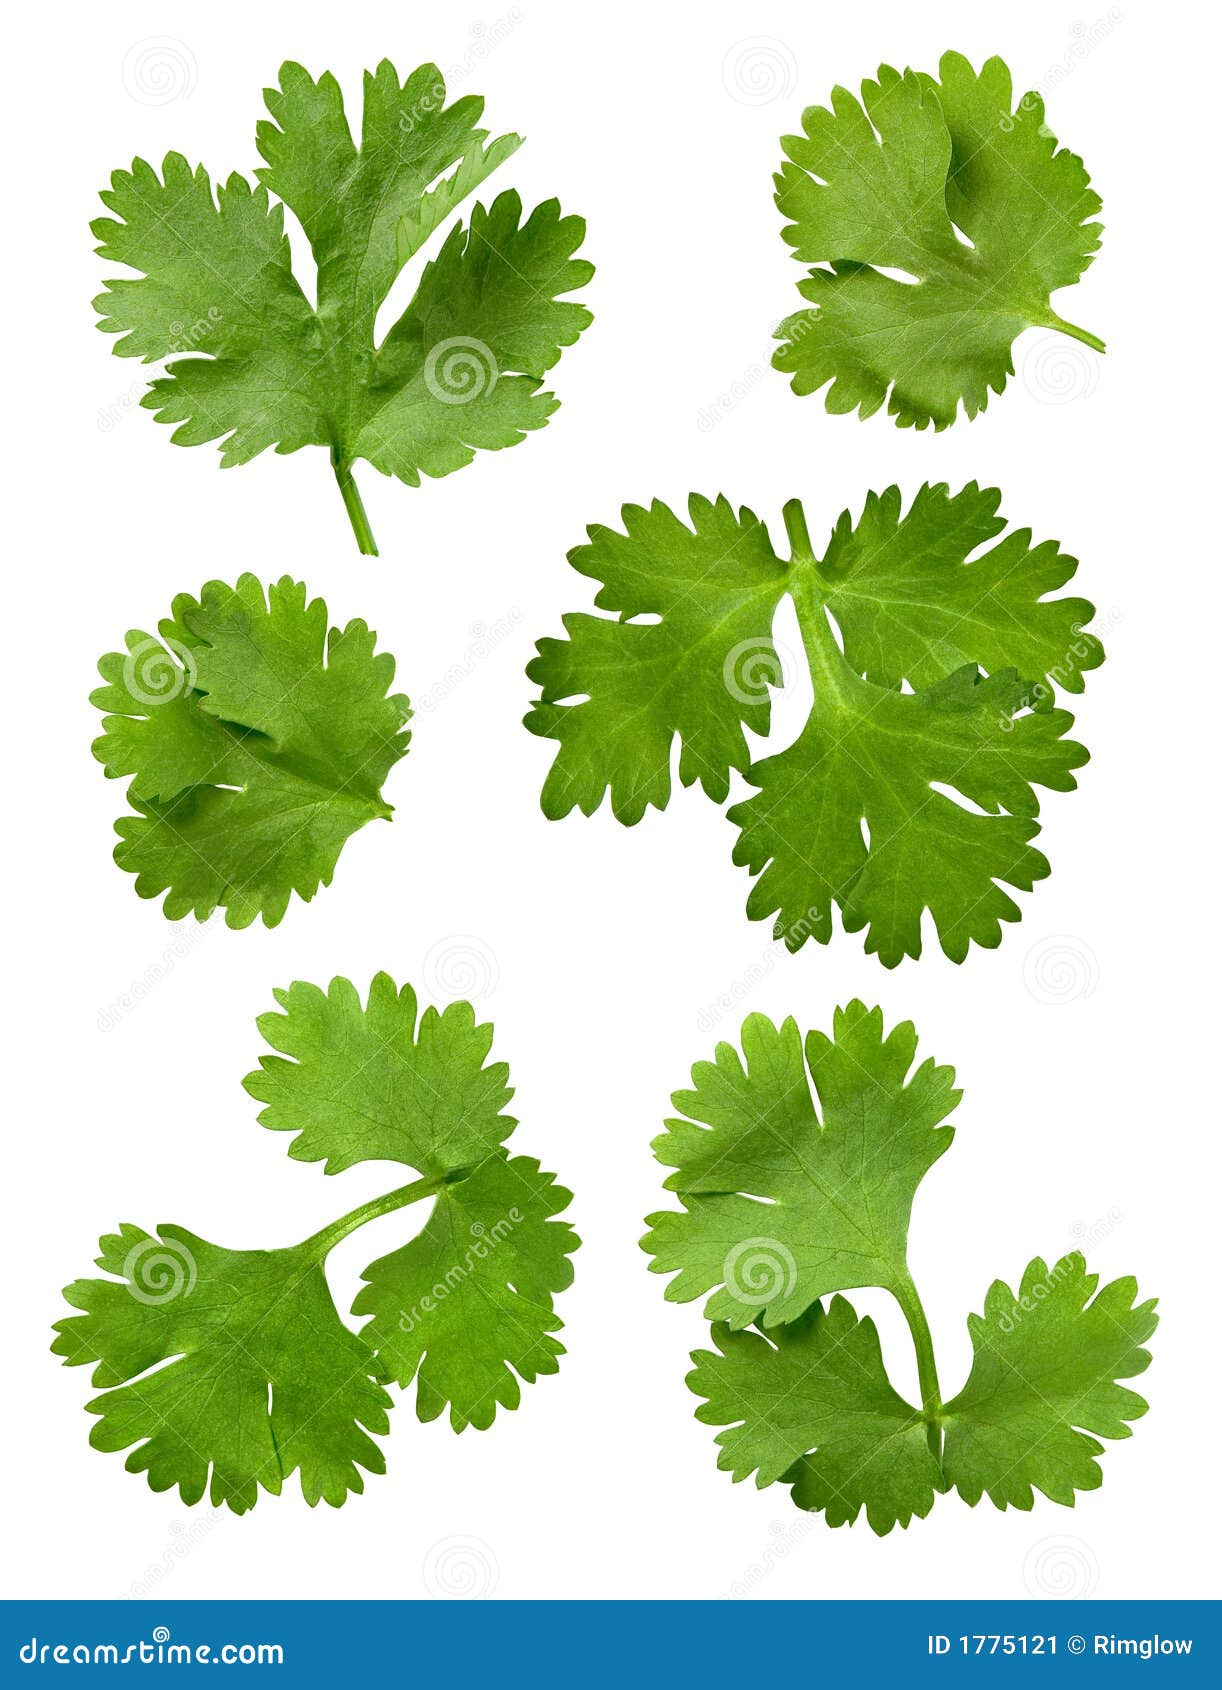 cilantro (parsley)